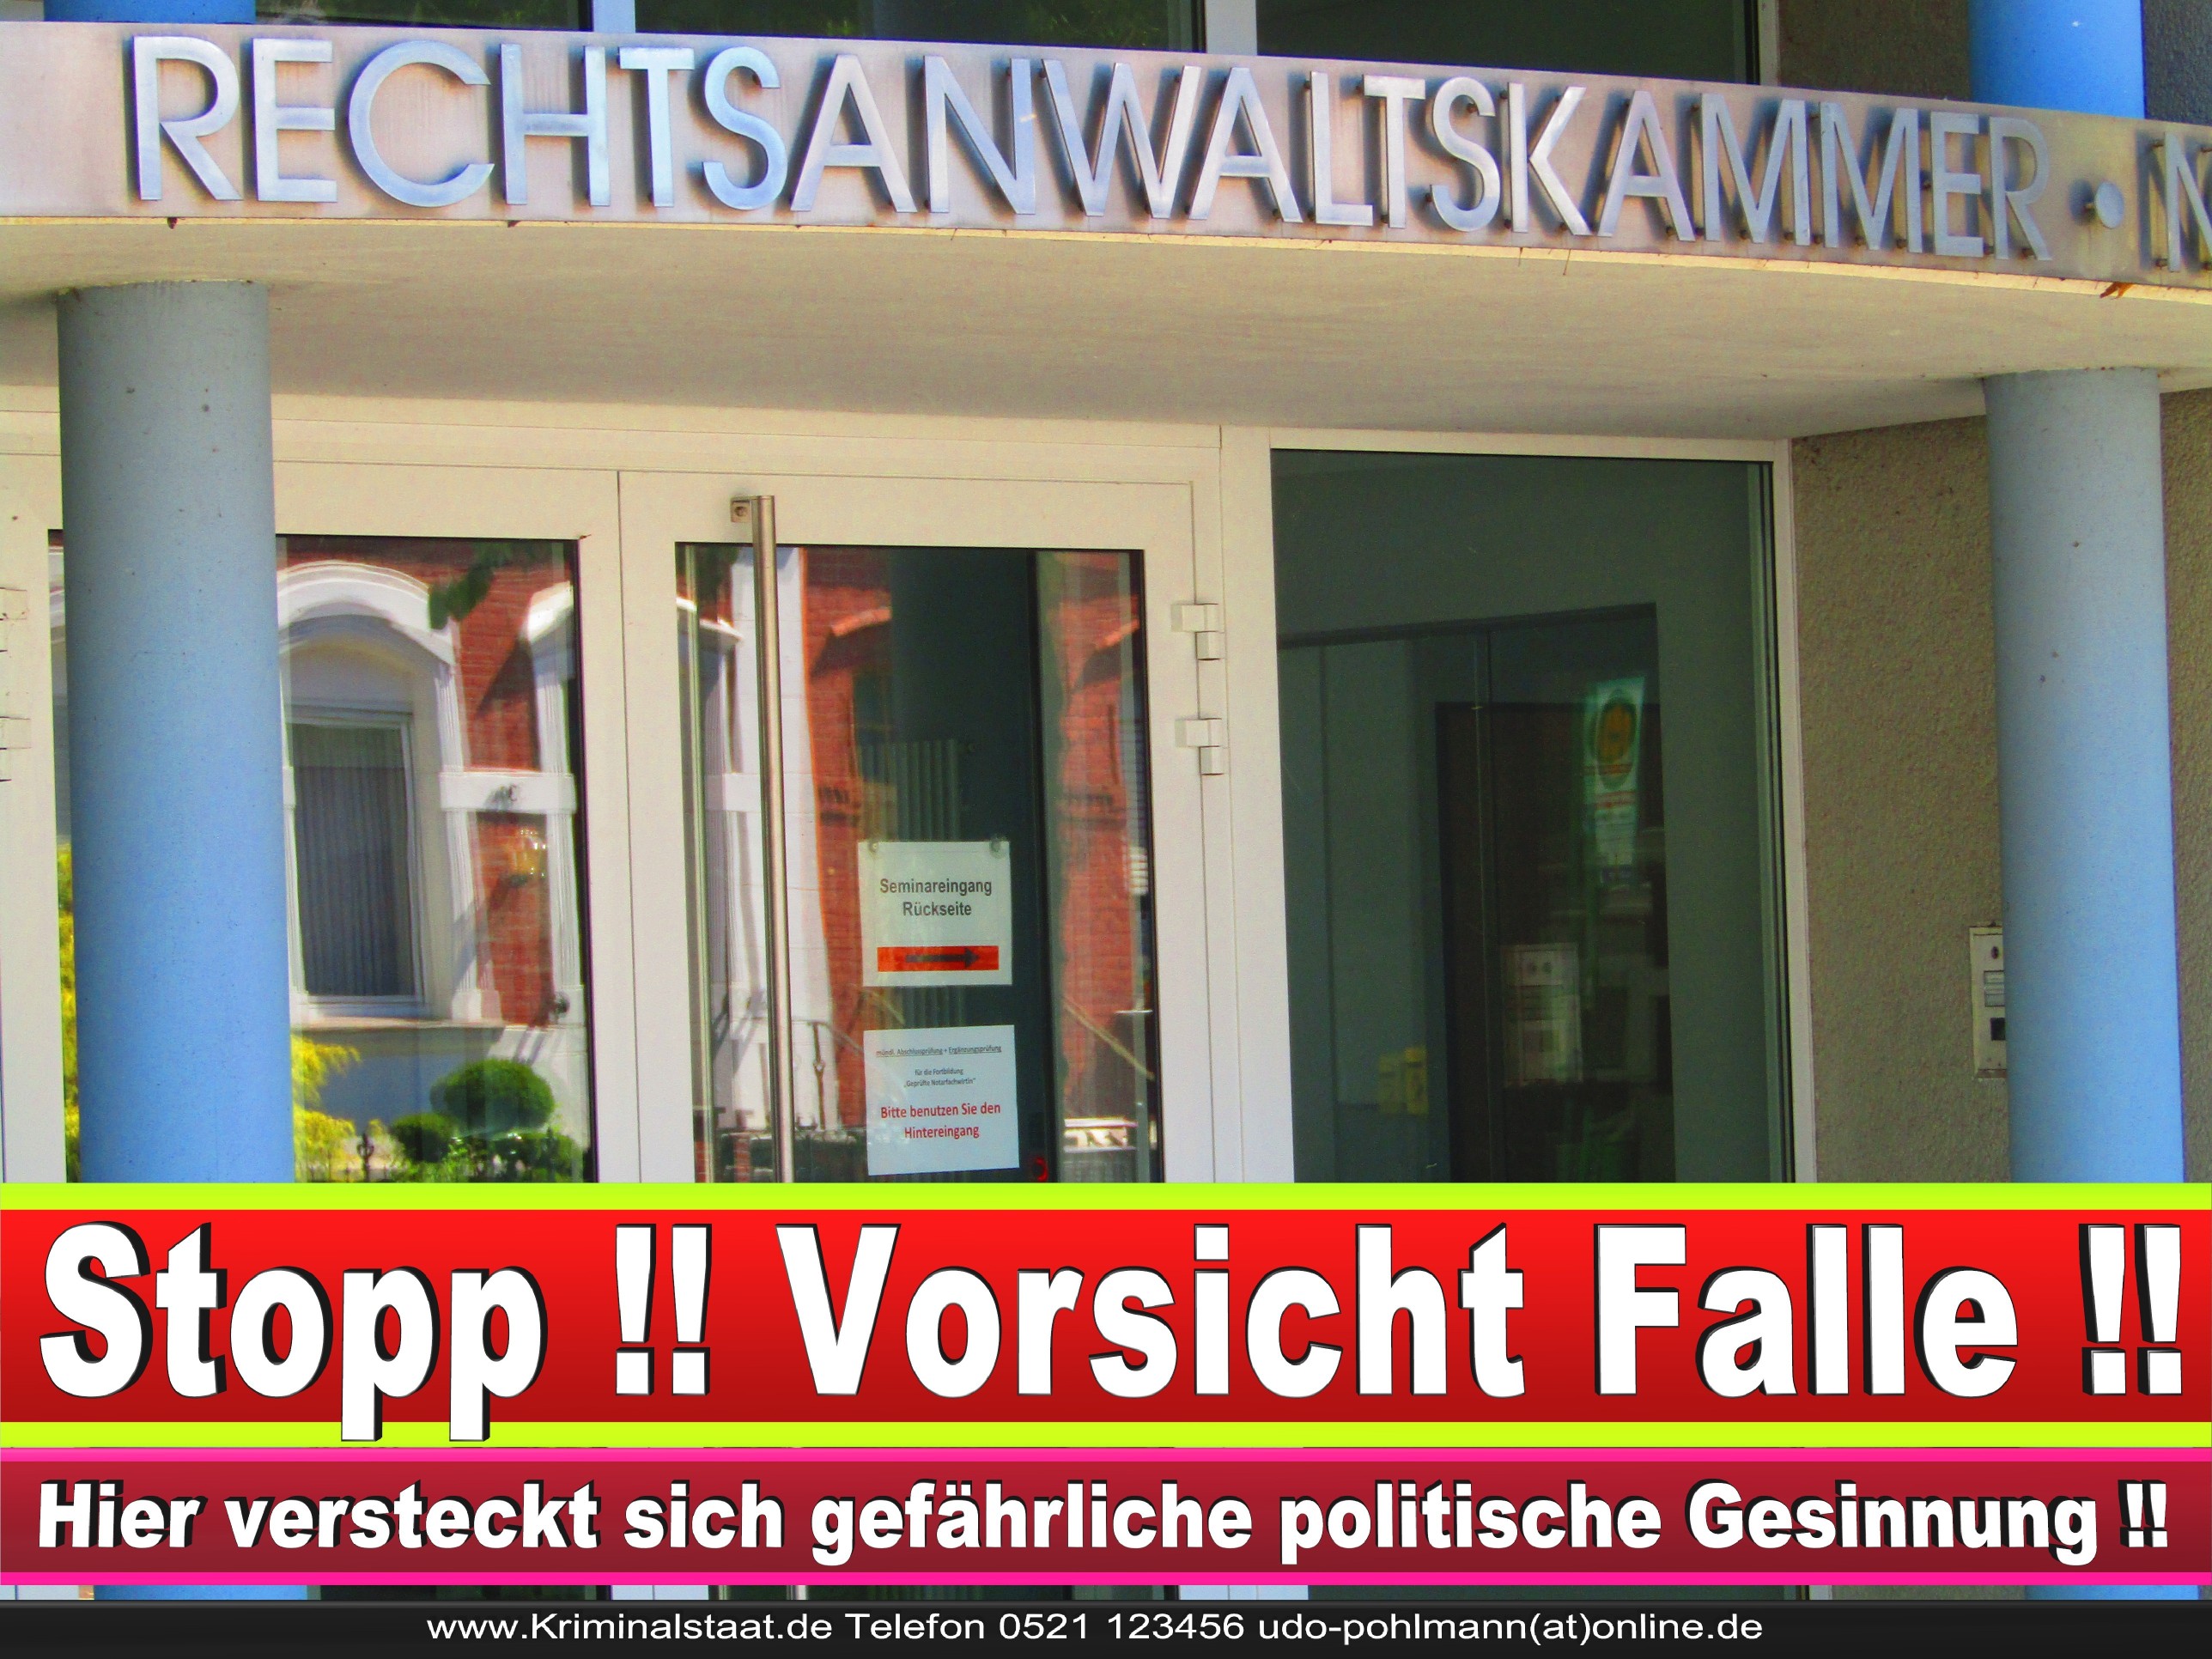 Rechtsanwaltskammer Hamm NRW Justizminister Rechtsanwalt Notar Vermögensverfall Urteil Rechtsprechung CDU SPD FDP Berufsordnung Rechtsanwälte Rechtsprechung (24)